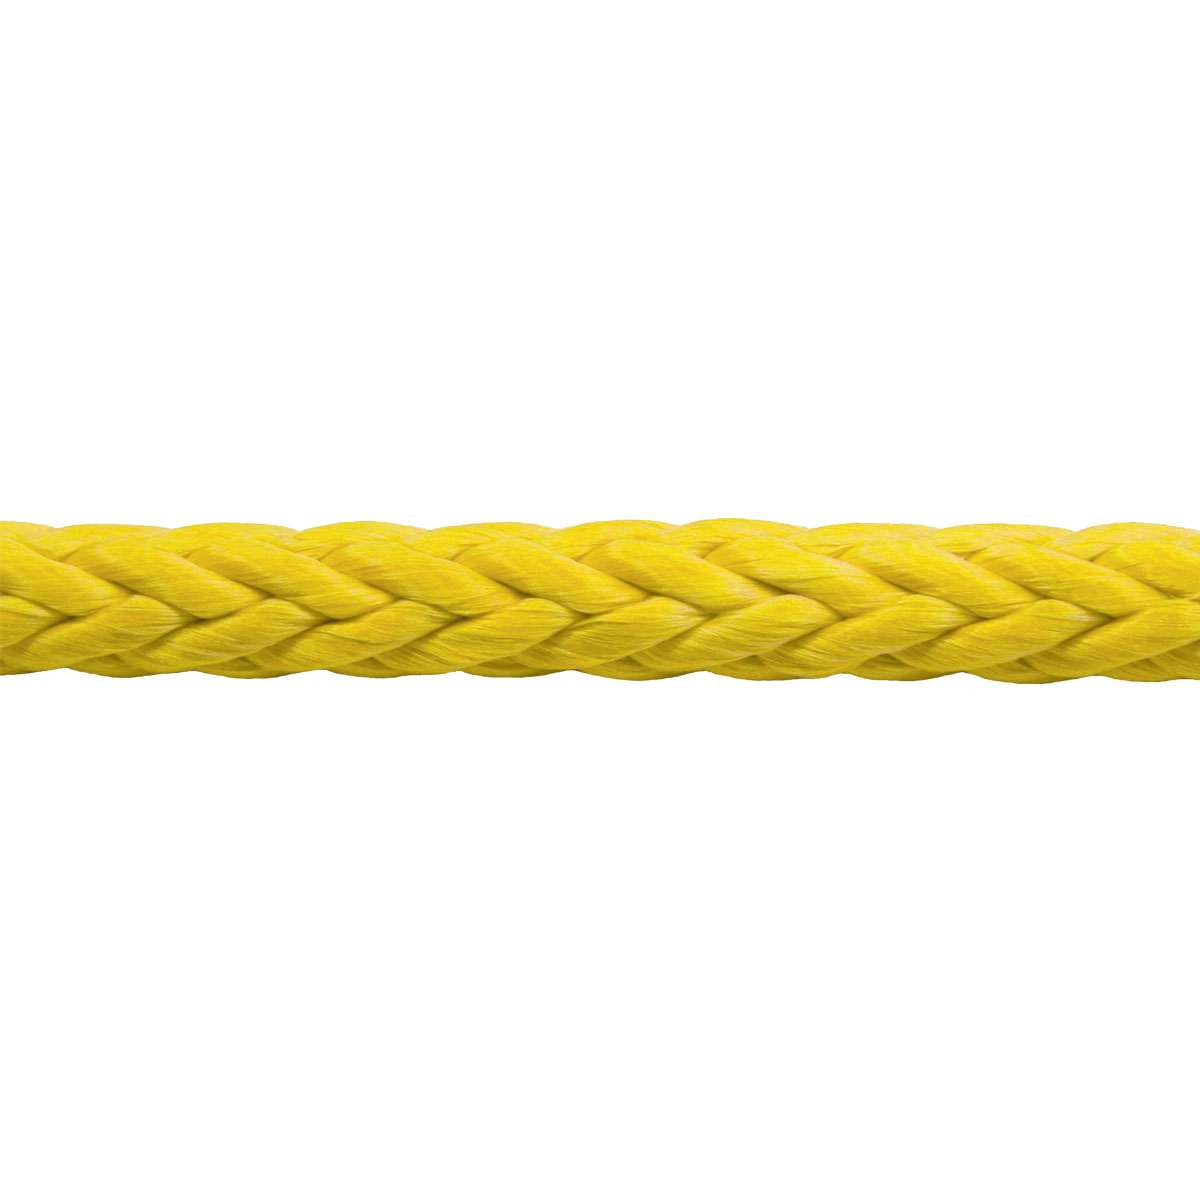 9mm tenex rope